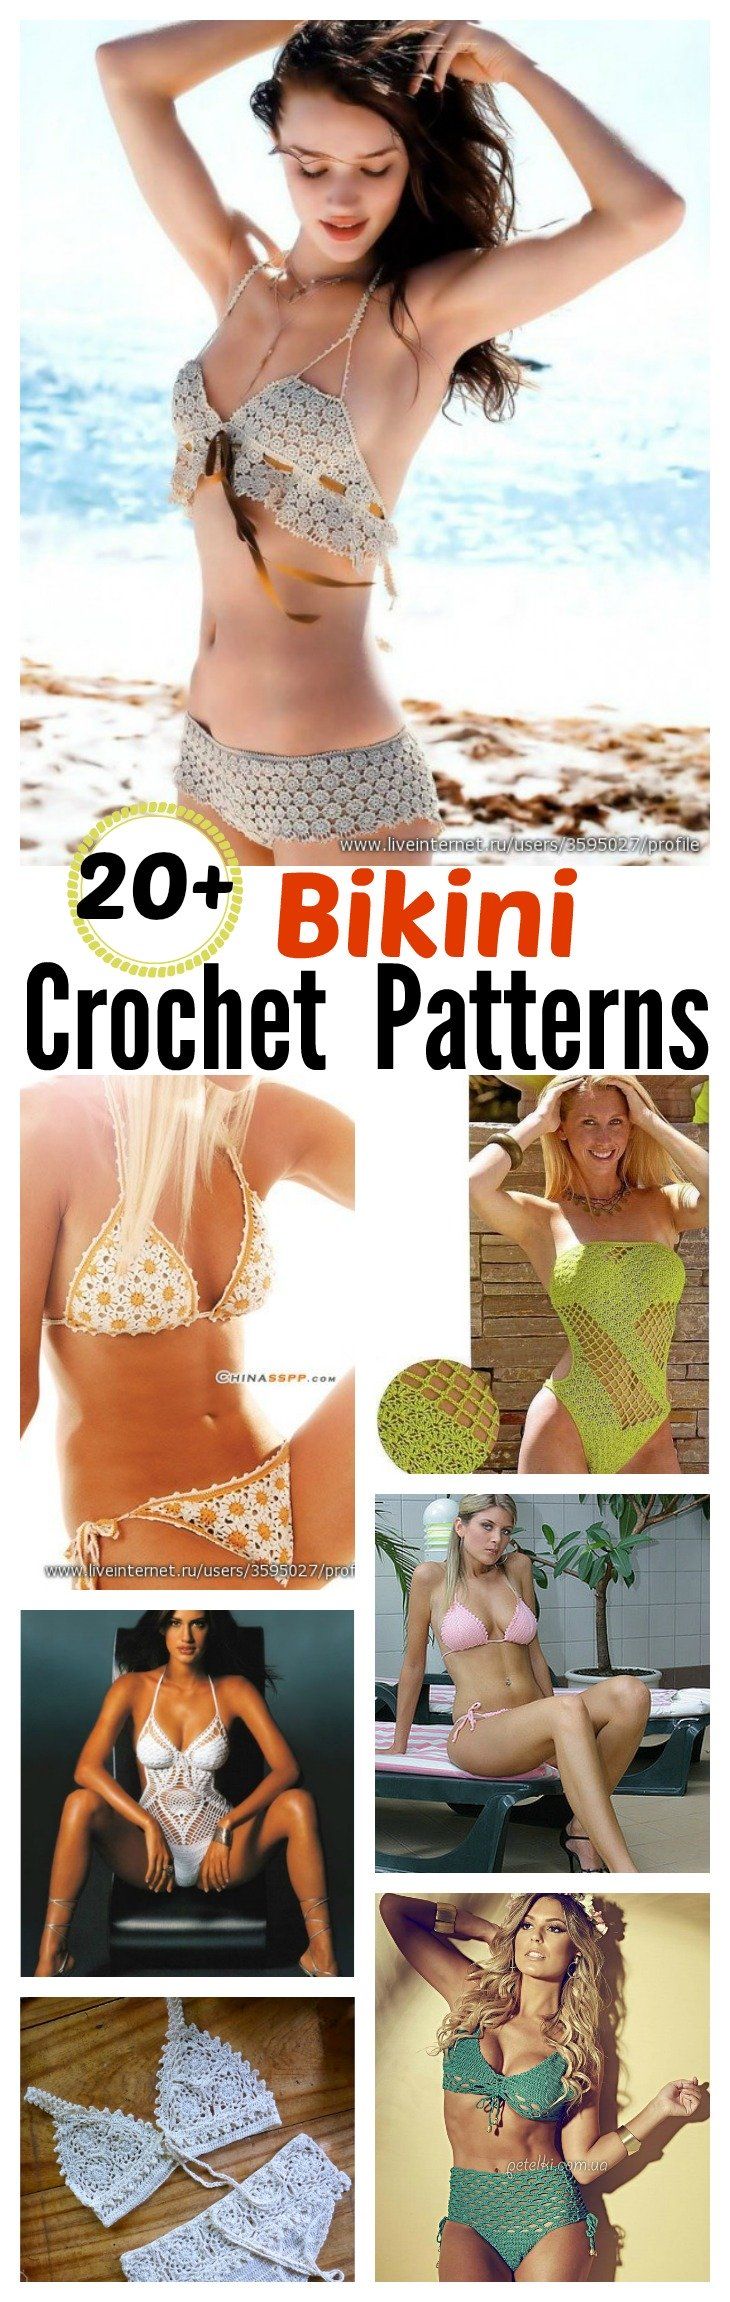 20-Free-Crochet-Bikini-Patterns-Page-3-of-3.jpg